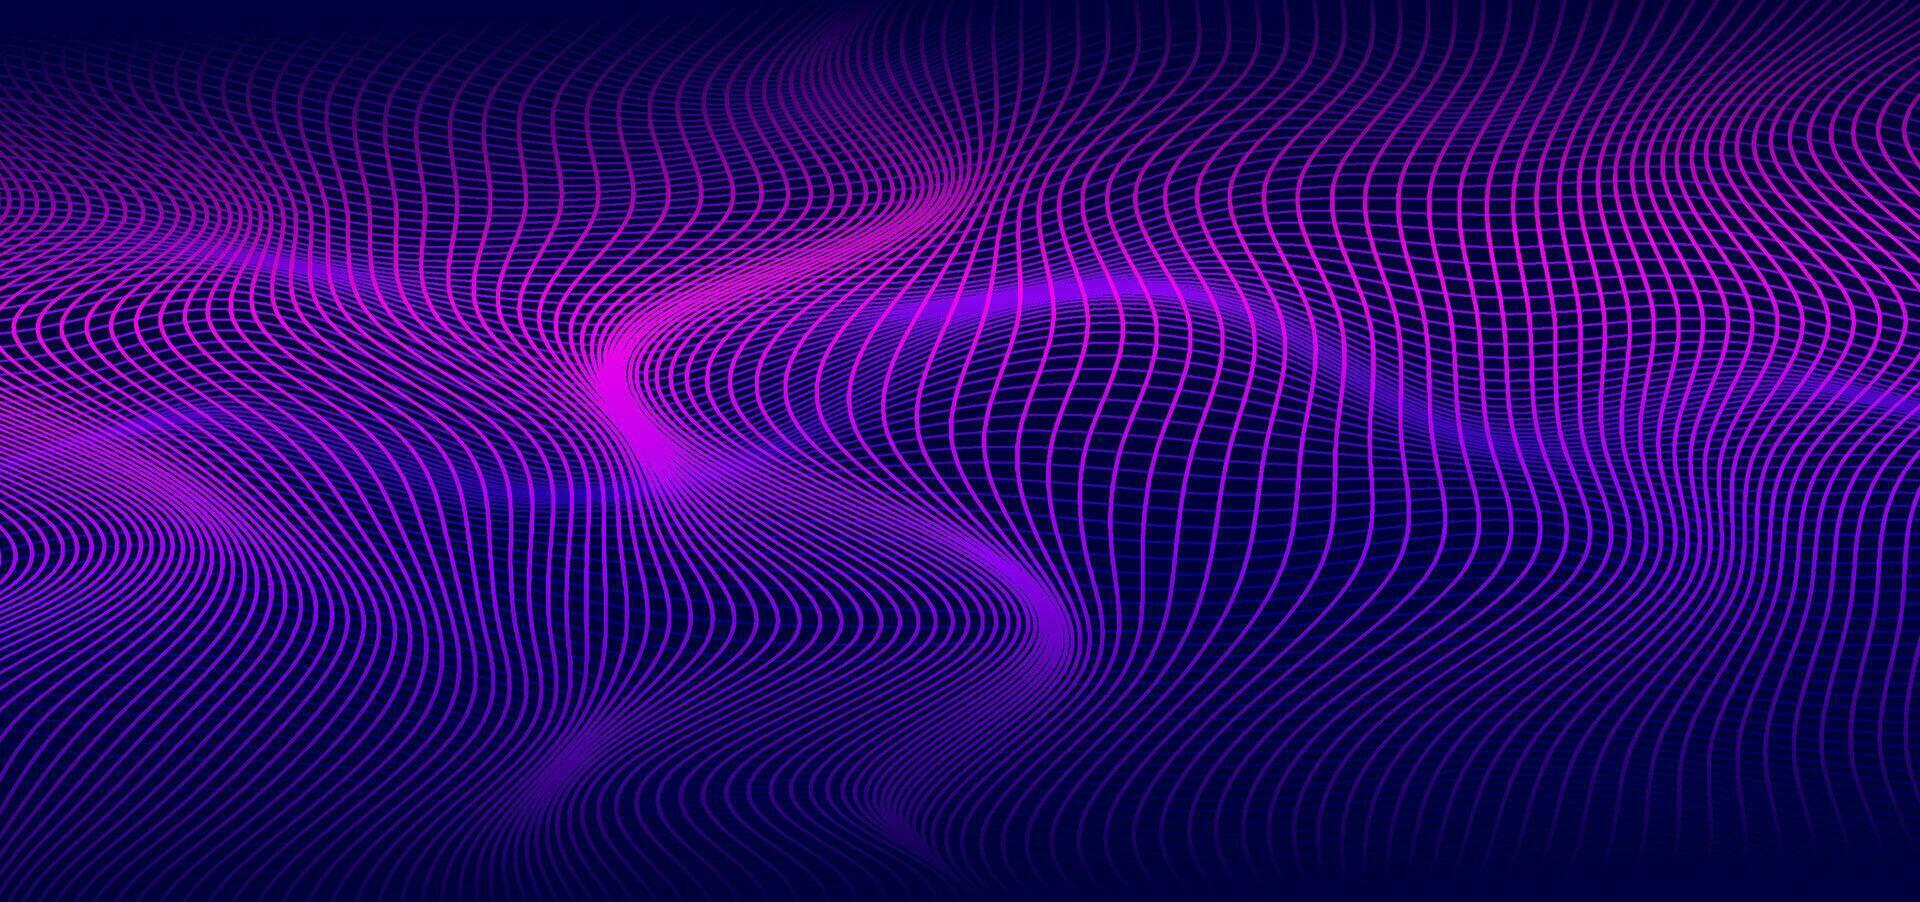 abstrakte glatte dünne Linien auf dunkelblauem Hintergrund. futuristische Technologiedesign-Kulisse mit violettem und blauem Gradientenübergang. vektor